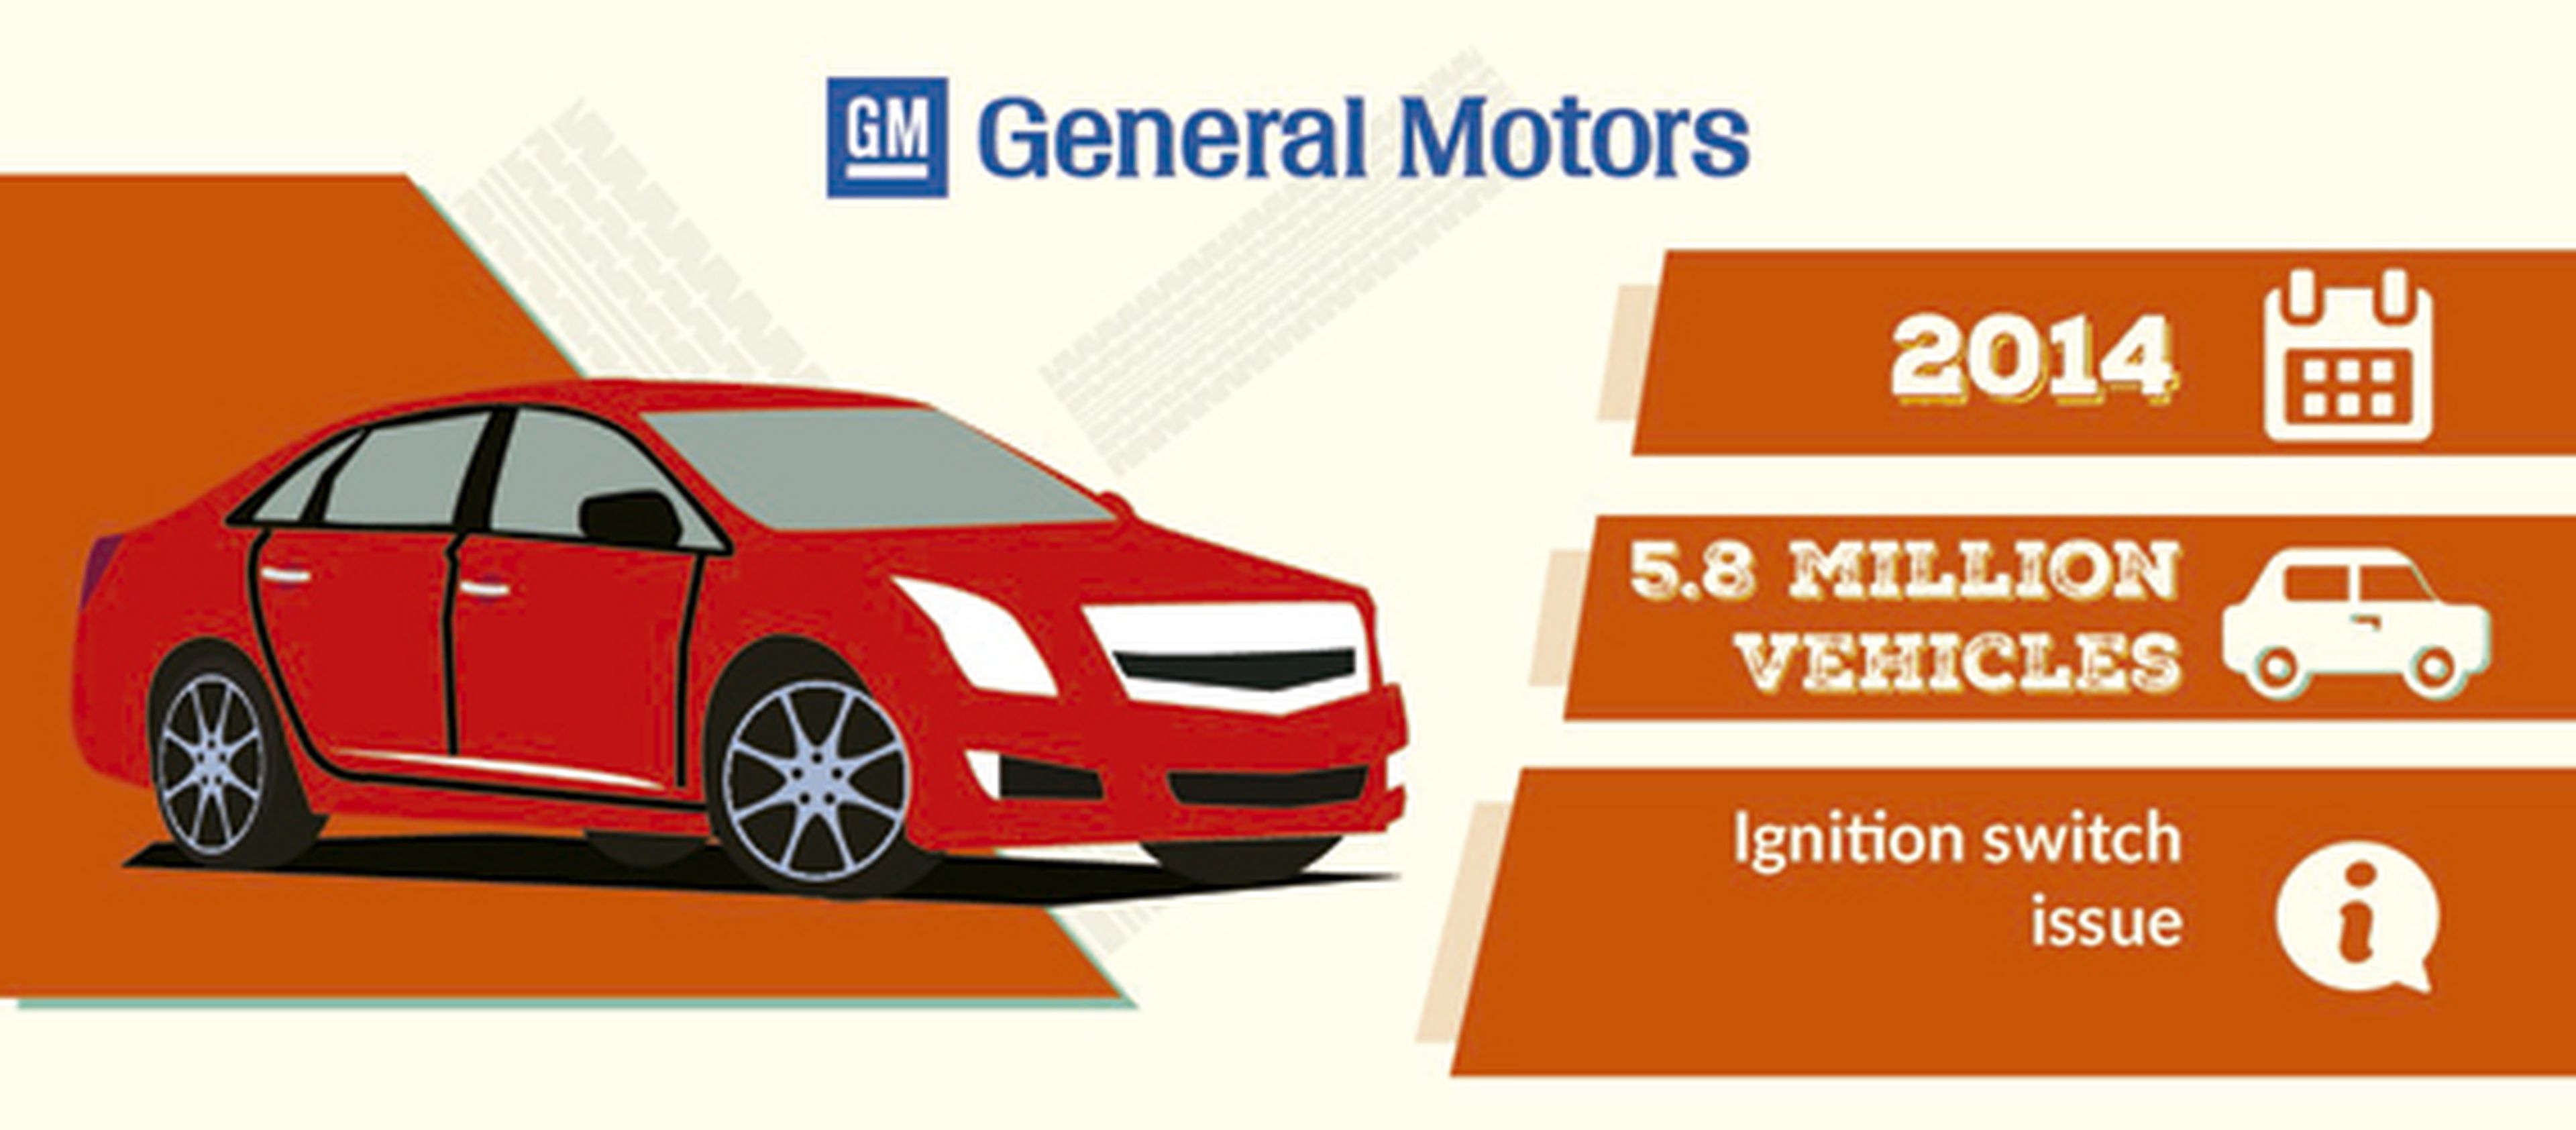 Llamada taller General Motors 2014